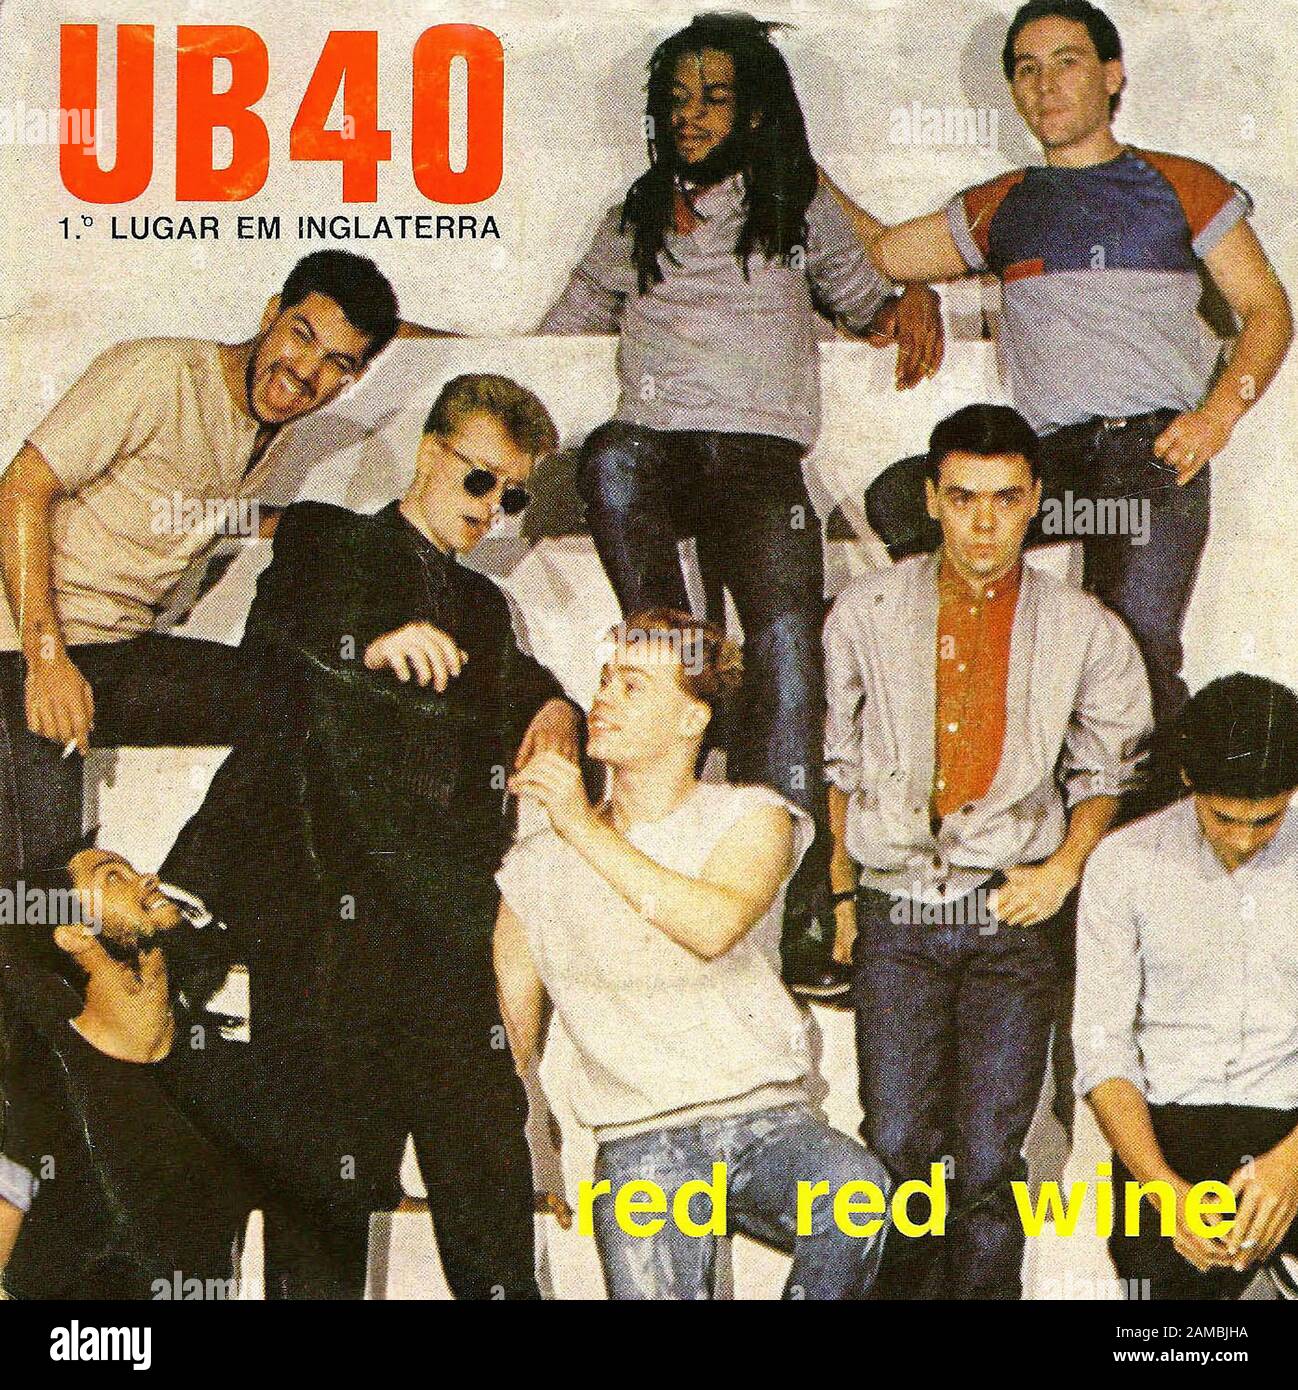 UB40 Red Wine - Classic vintage vinyl album Stock Photo